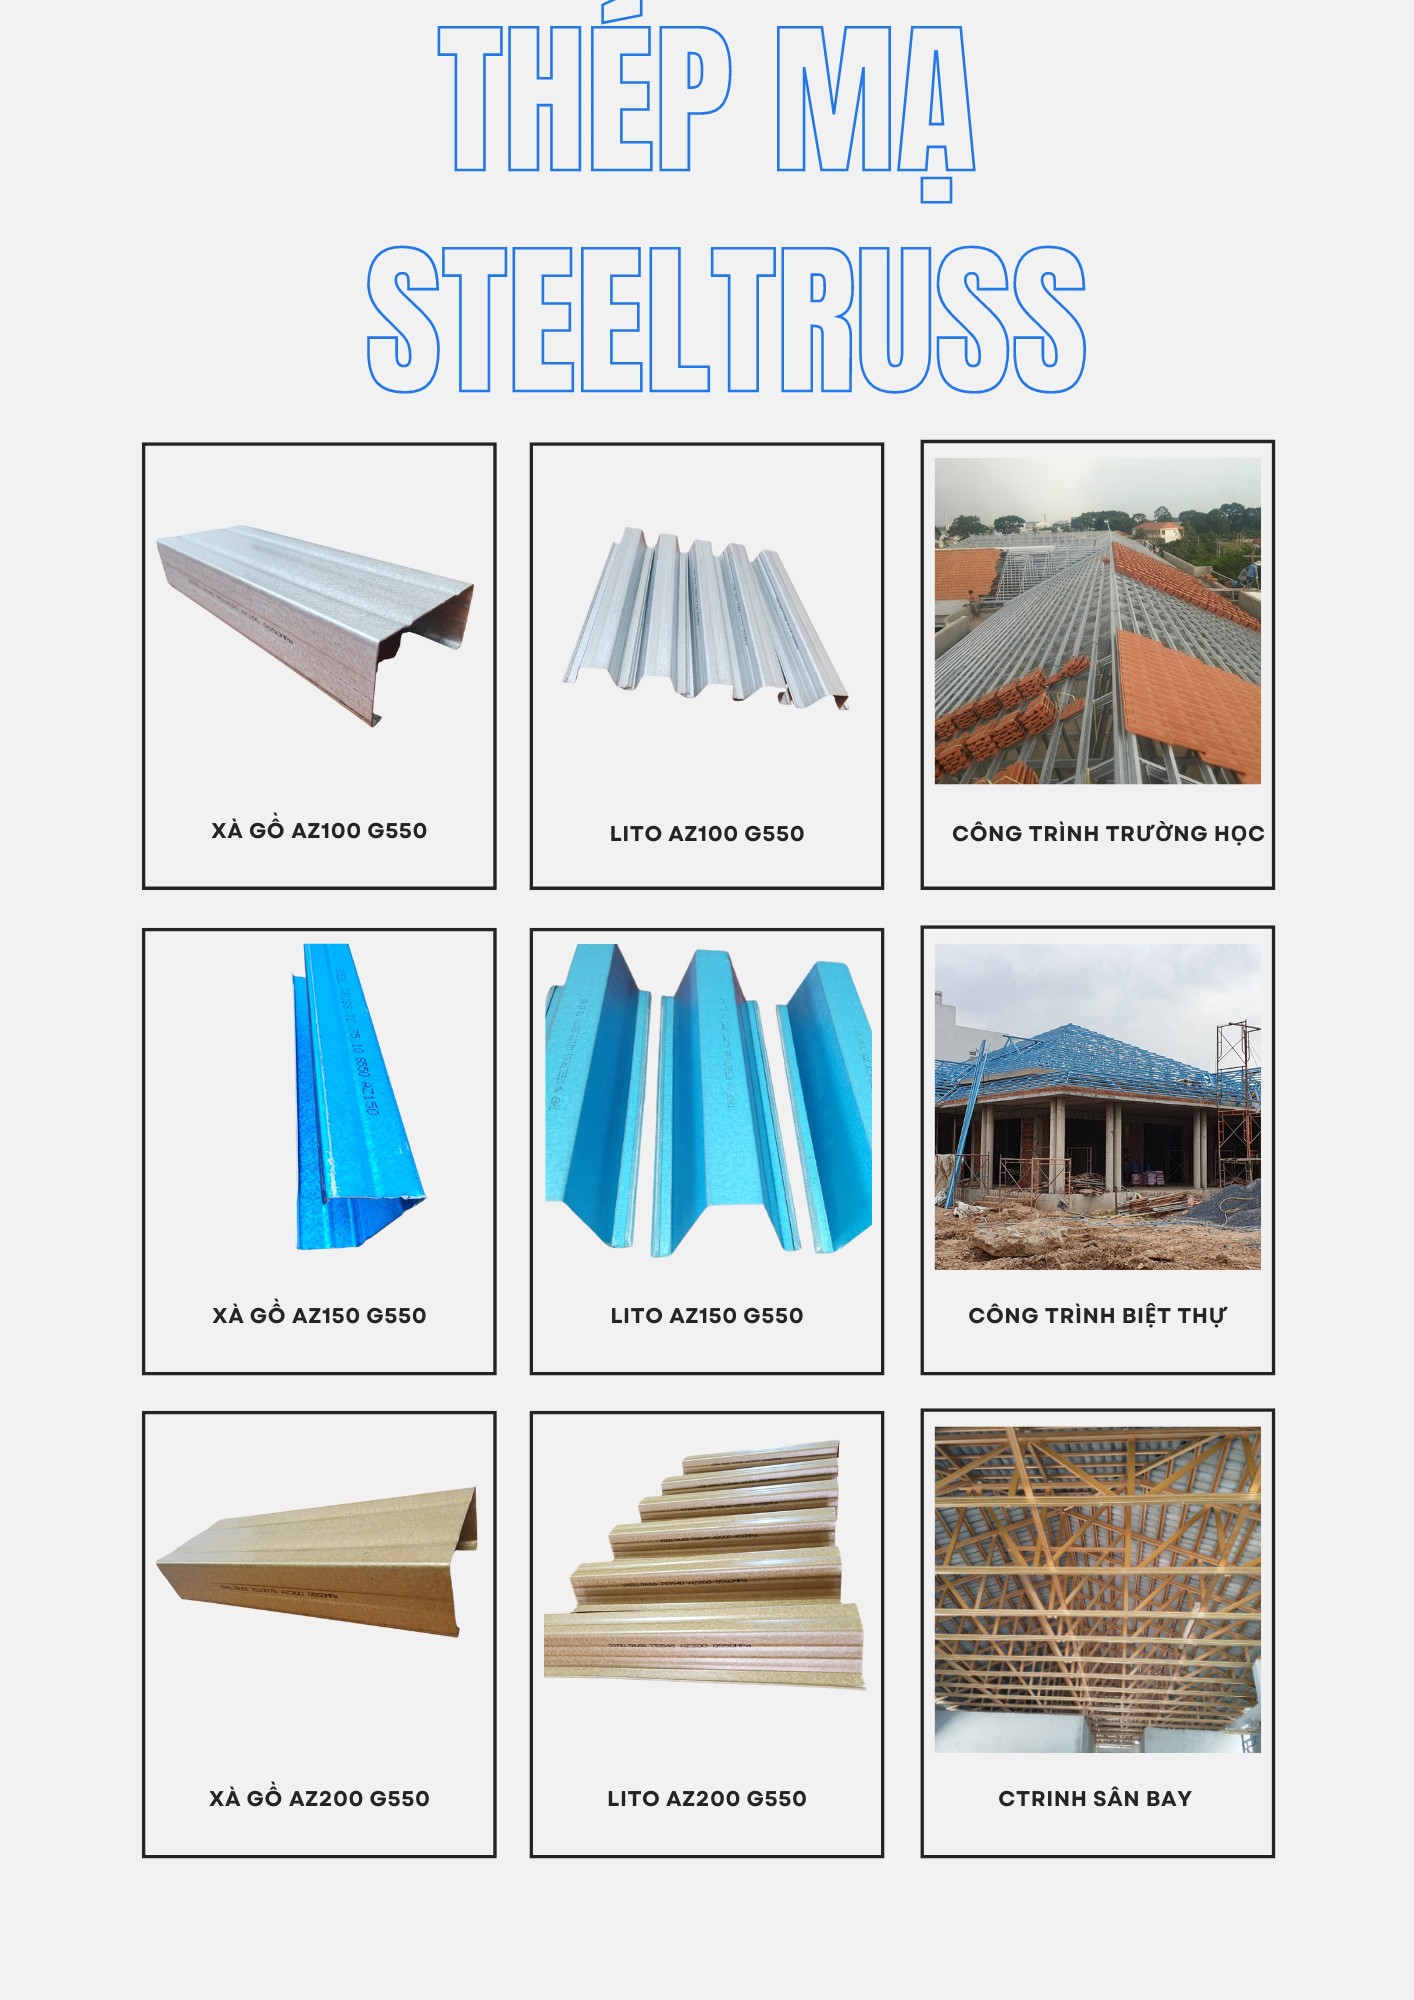 Thép mạ Steeltruss -Giải pháp thi công trọn gói mái nhà tiết kiệm và chuyên nghiệp - 2